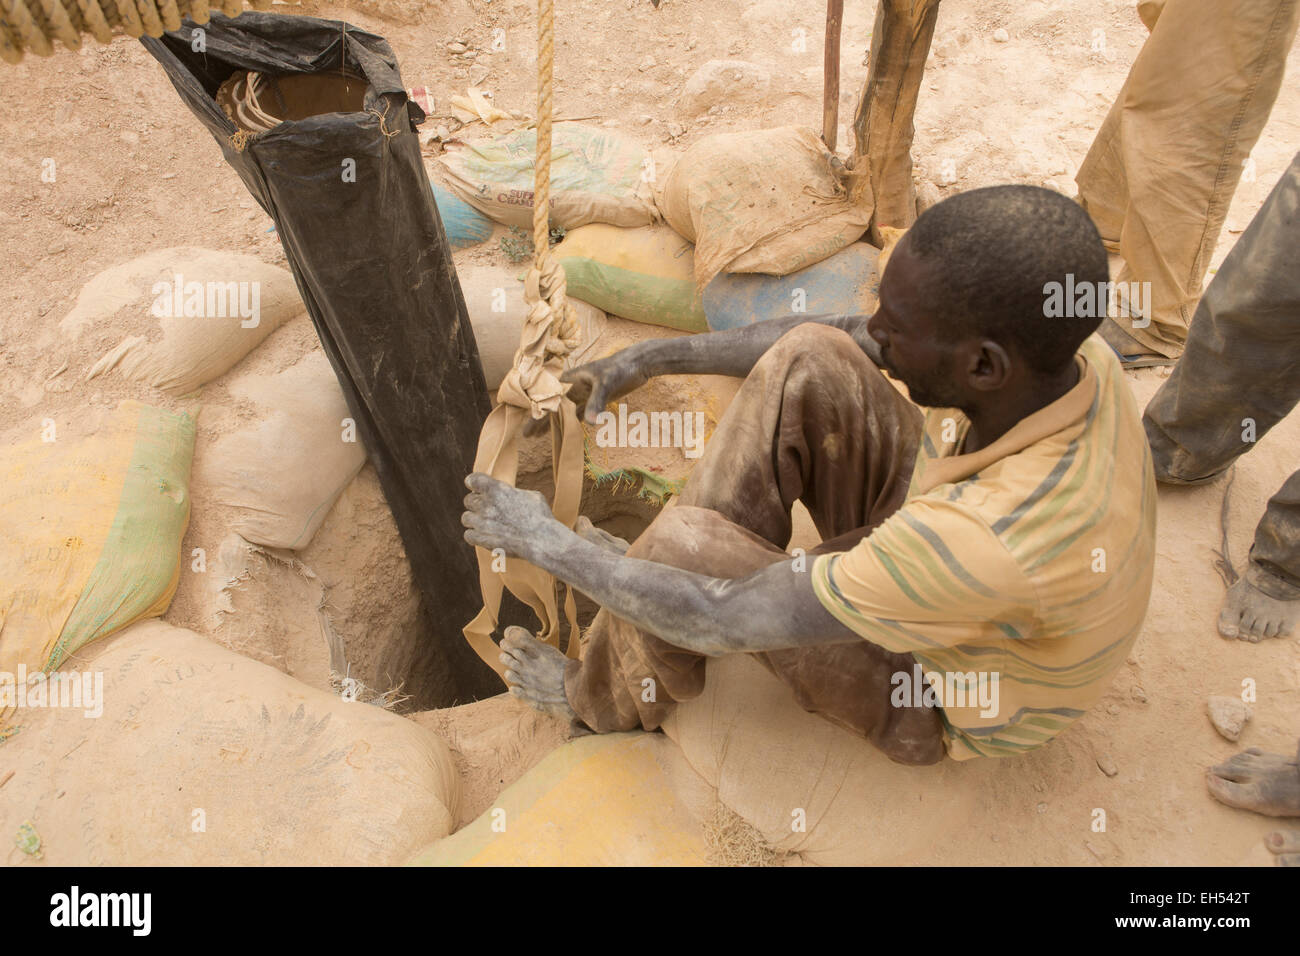 KOMOBANGAU, NIGER, : un mineur met sur une sangle pour être abaissée vers le bas l'entrée de l'arbre d'une mine d'or. Banque D'Images